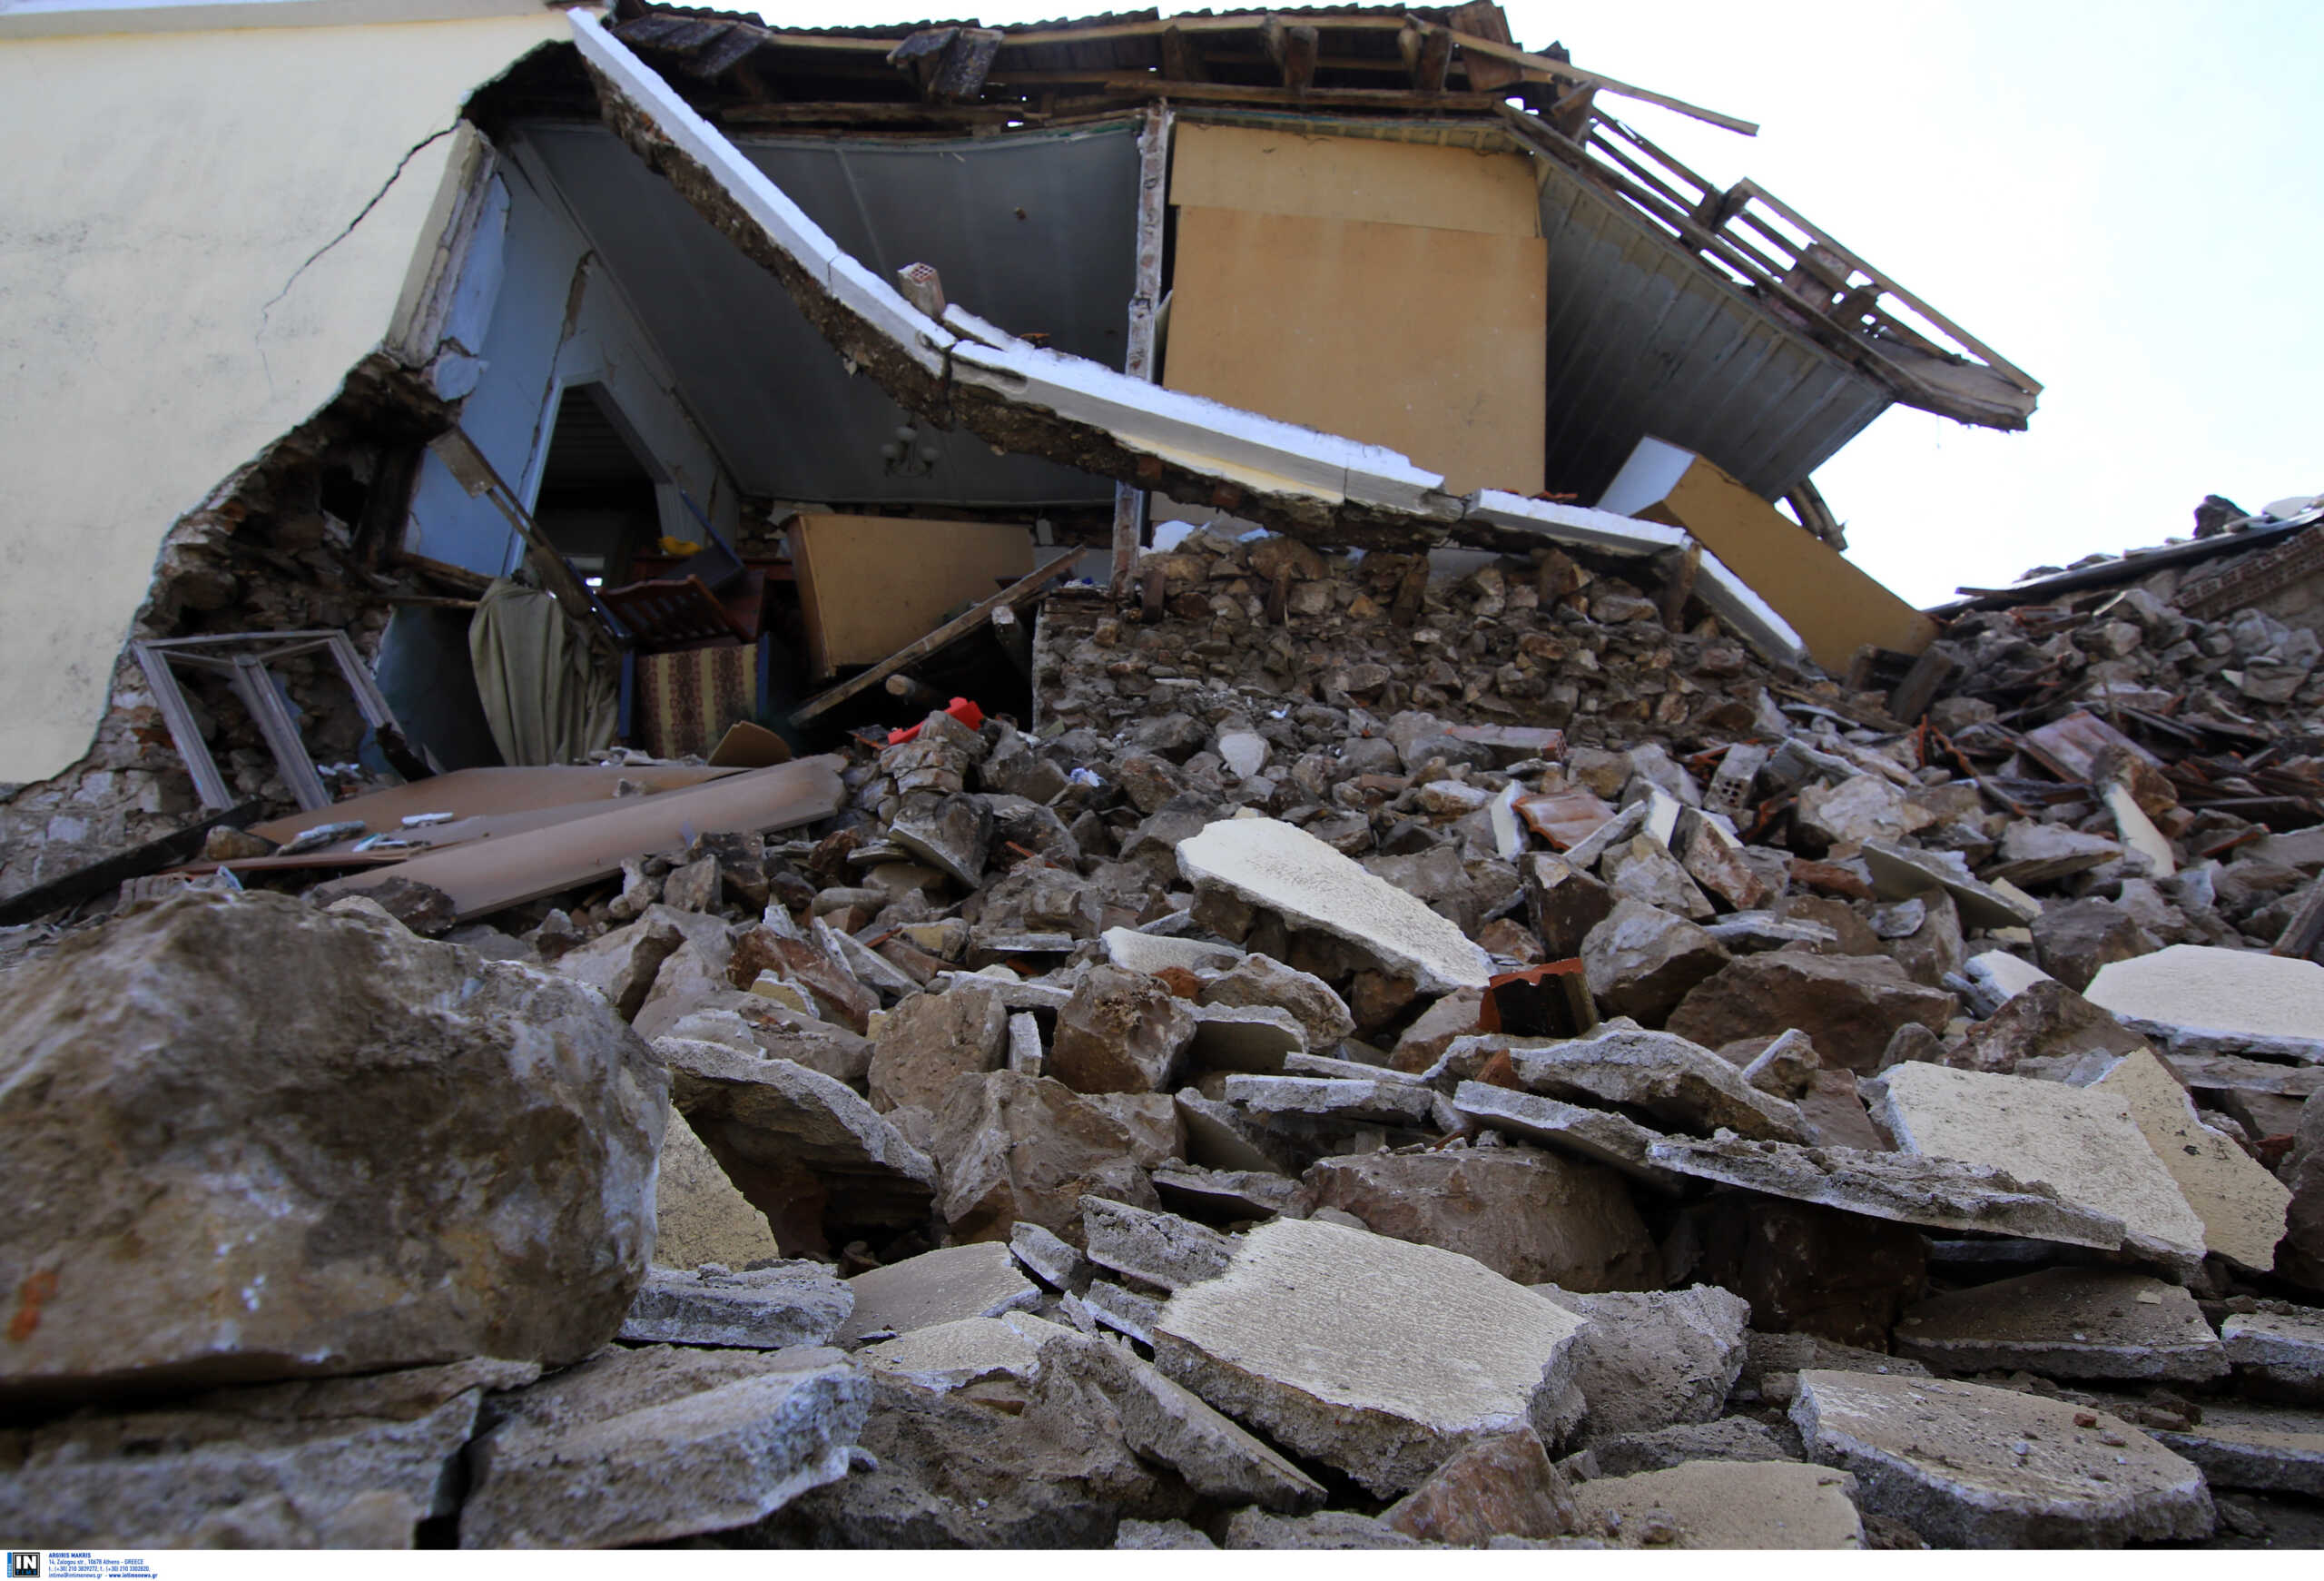 Σεισμός στην Ελασσόνα: Επικίνδυνες και αποκαρδιωτικές εικόνες 21 μήνες μετά τα σαρωτικά 6,3 Ρίχτερ